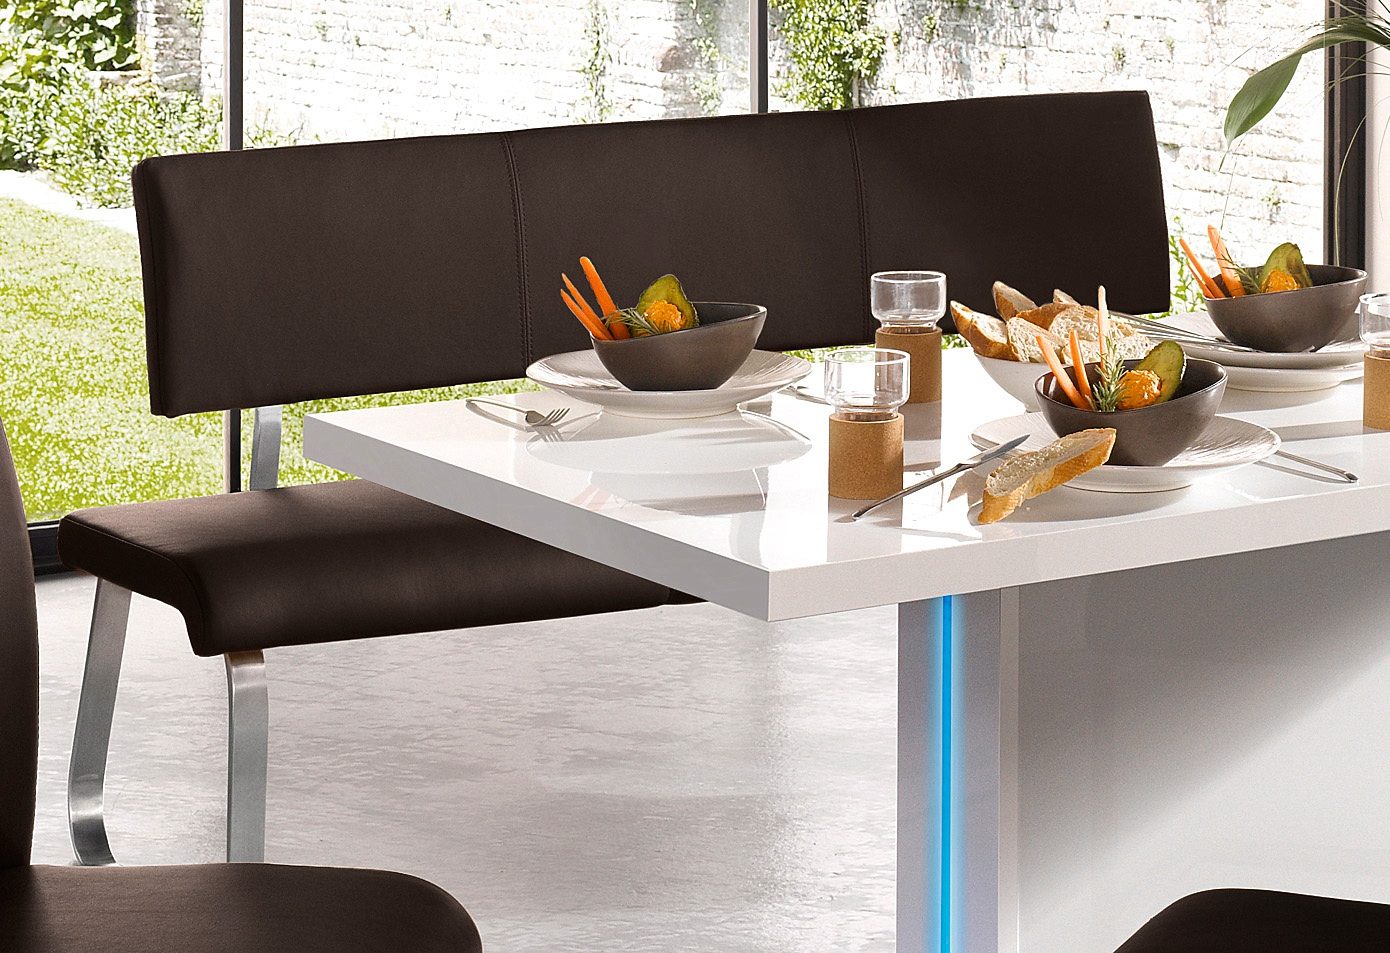 MCA furniture Bank Arco belastbaar tot 280 kg, echt leer, in verschillende breedten